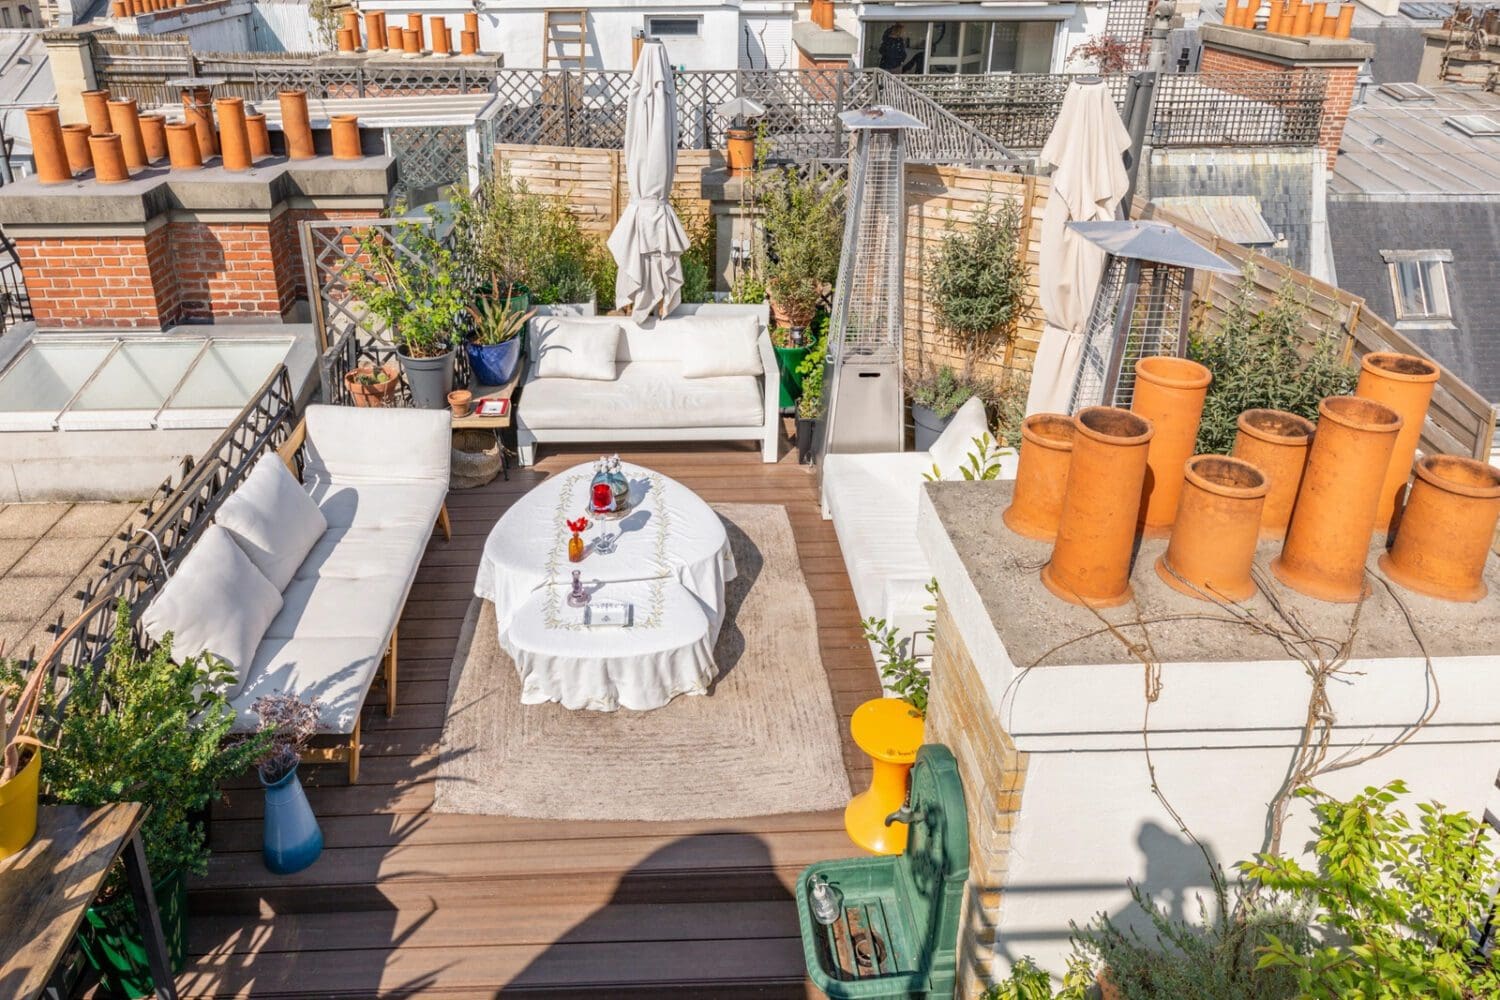 Rooftop - Le rooftop de Felipe - Paris - Toi Toi Mon Toit